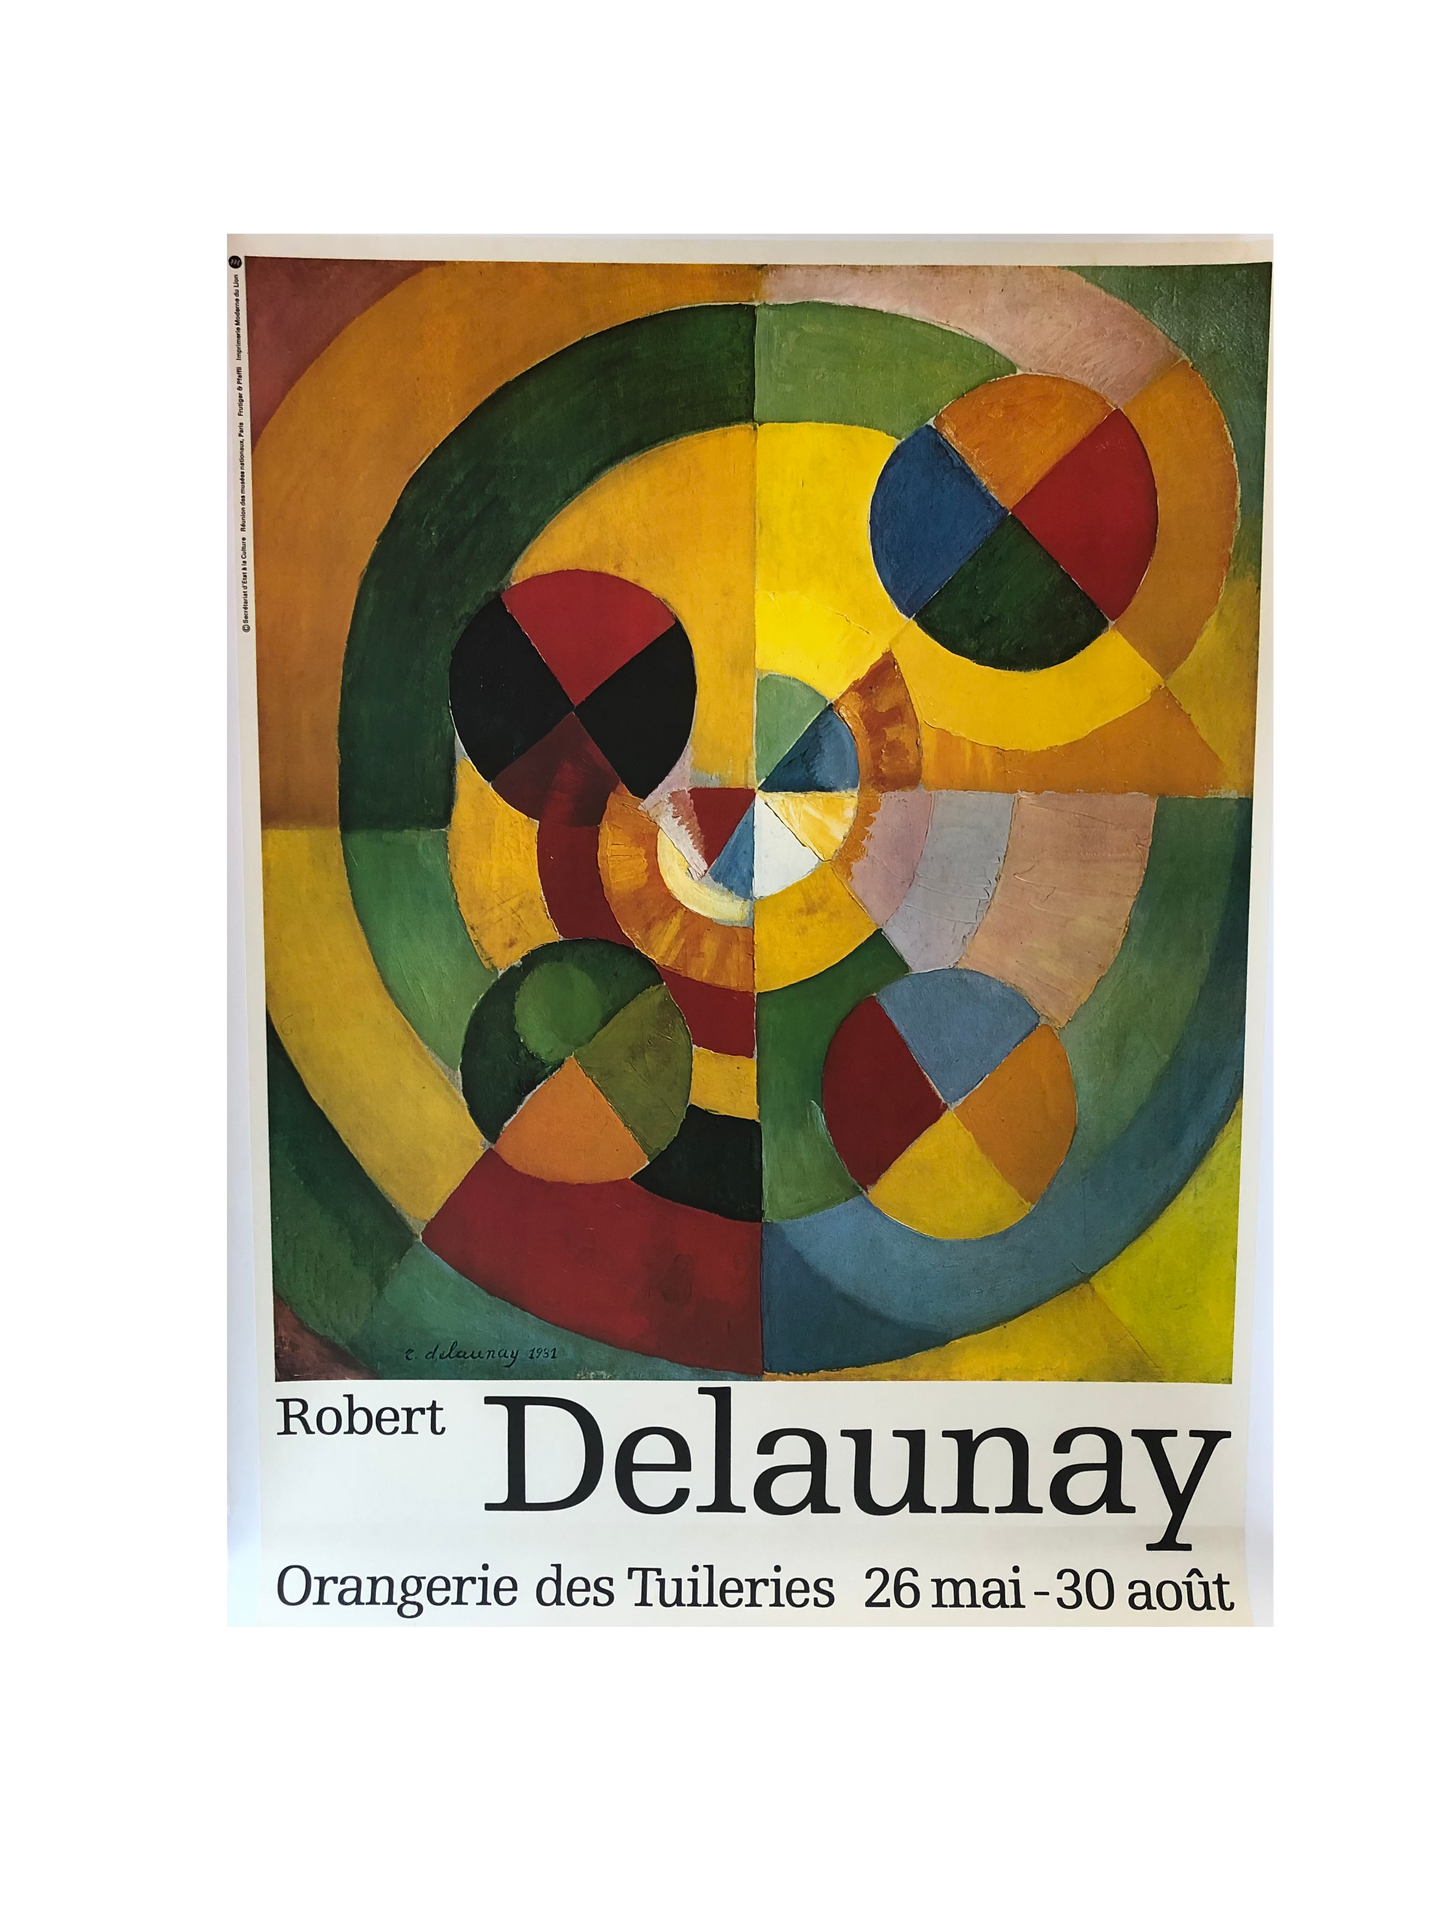 Robert Delaunay 1976 Exhibition Poster